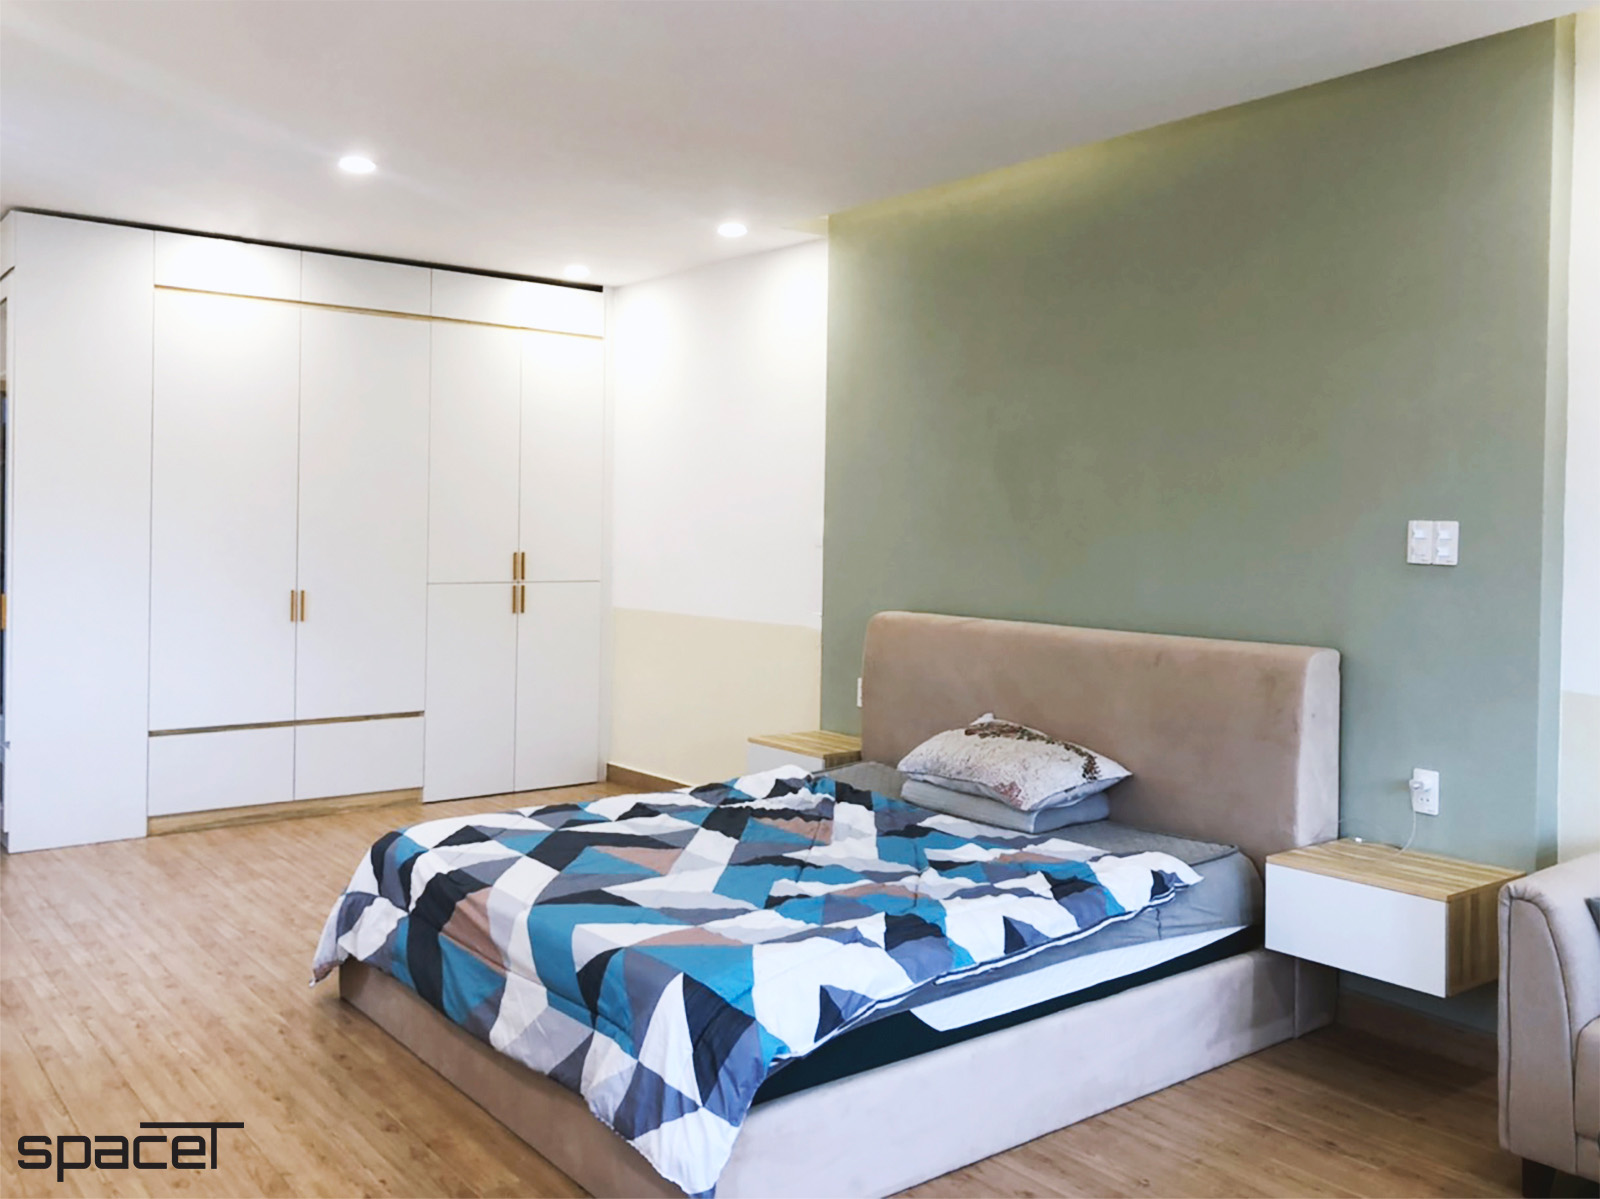 Phòng ngủ, phong cách Hiện đại Modern, hoàn thiện nội thất, nhà phố Quận 11